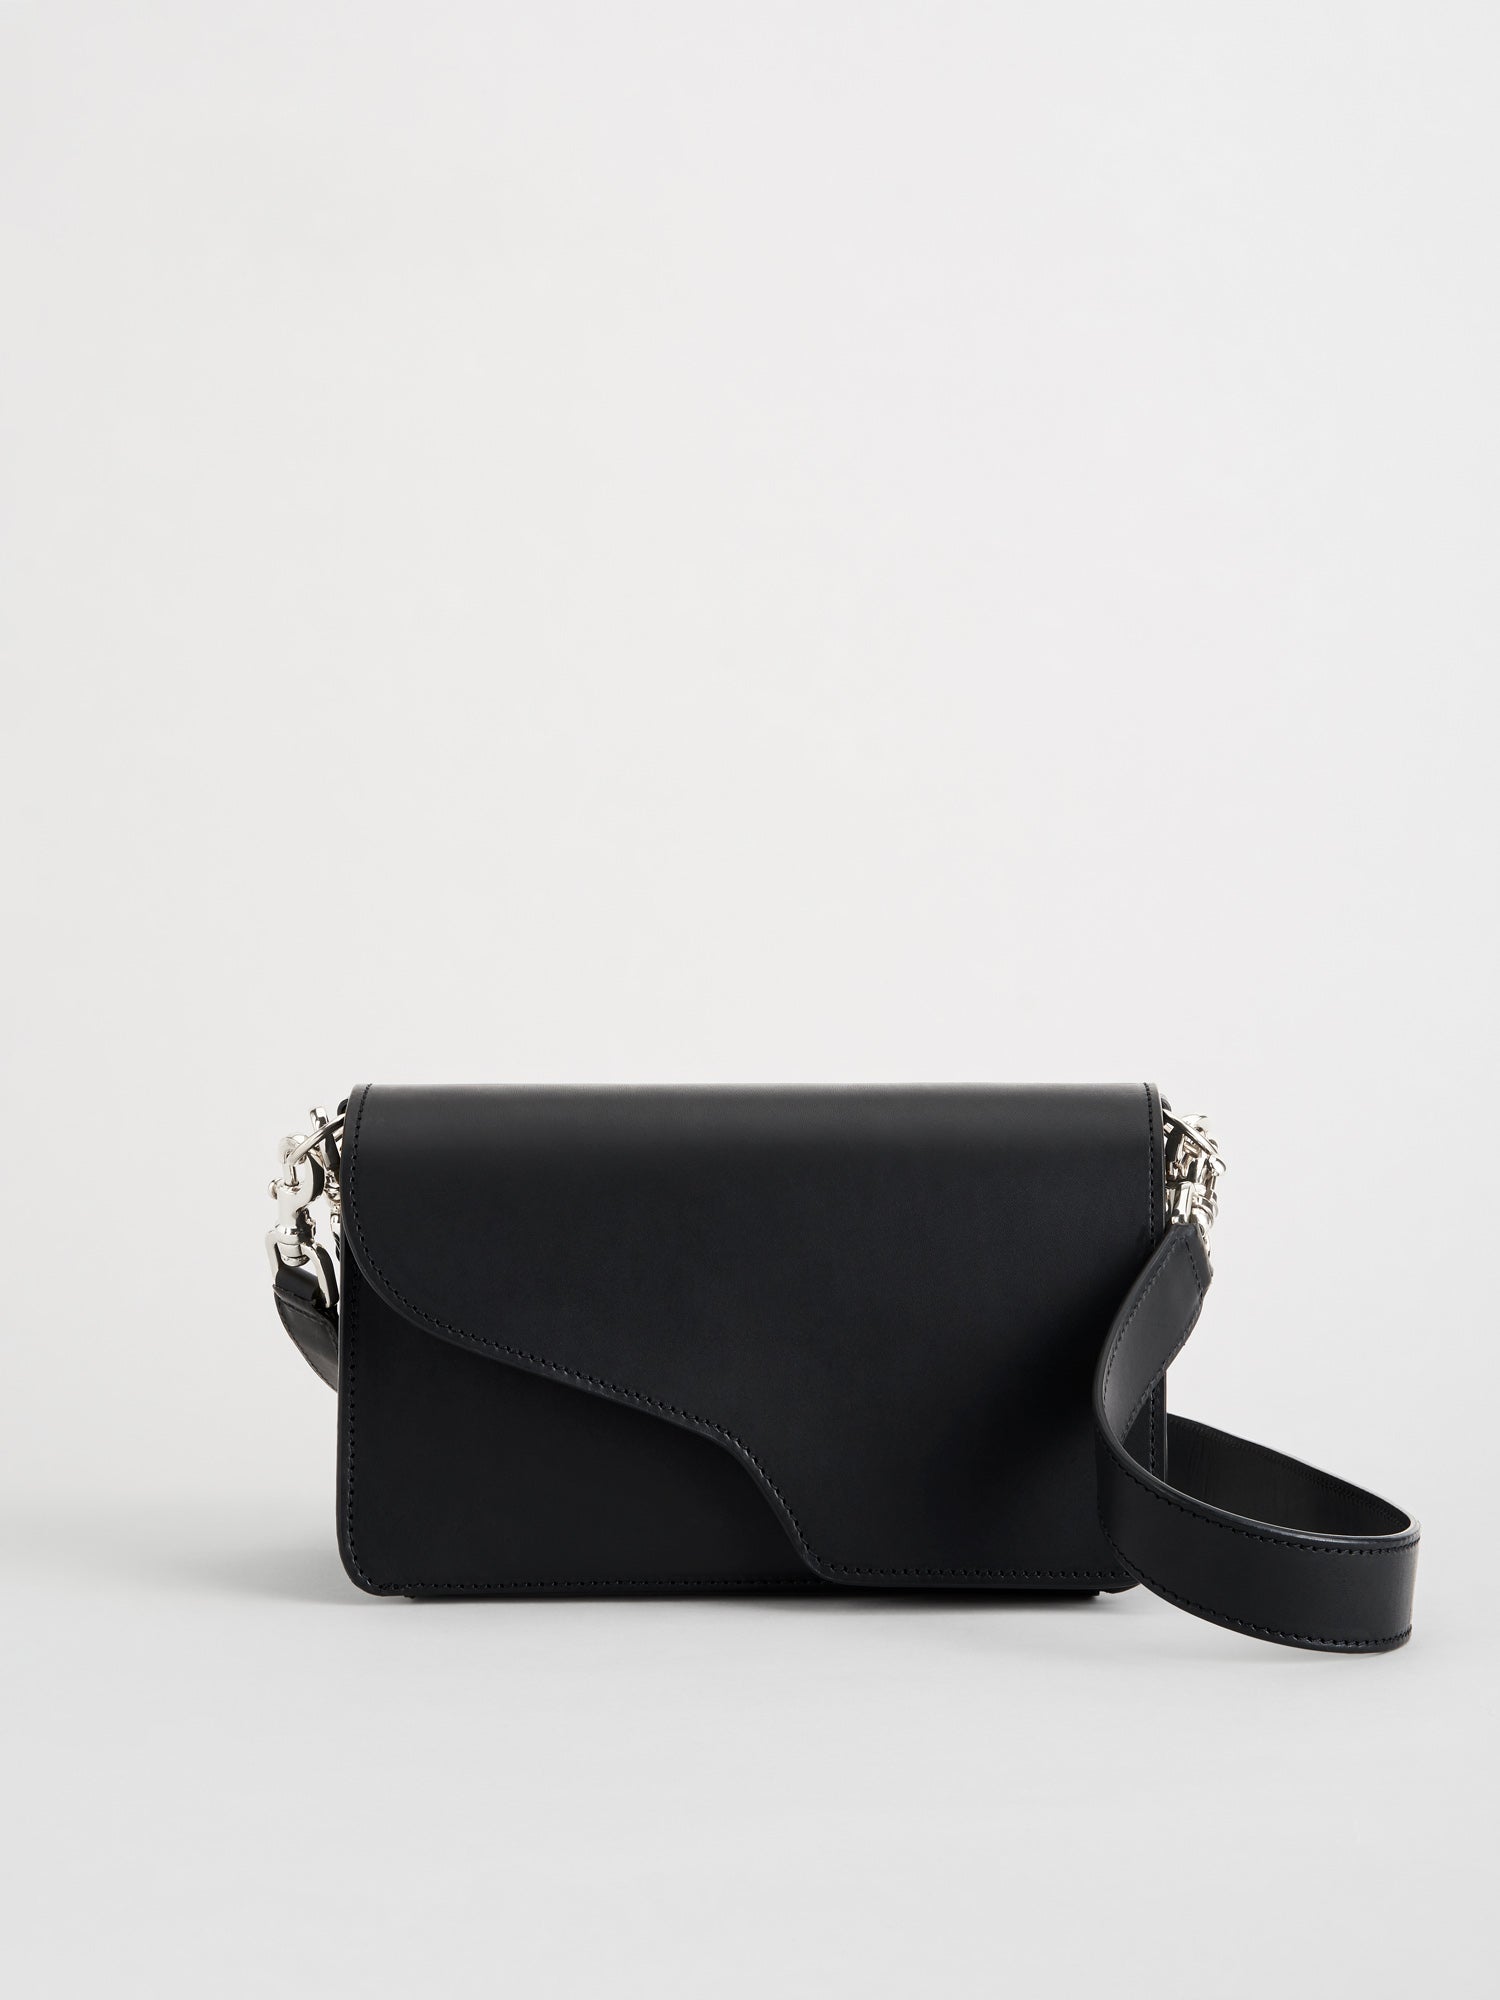 Assisi Black/Silver Leather Shoulder Bag